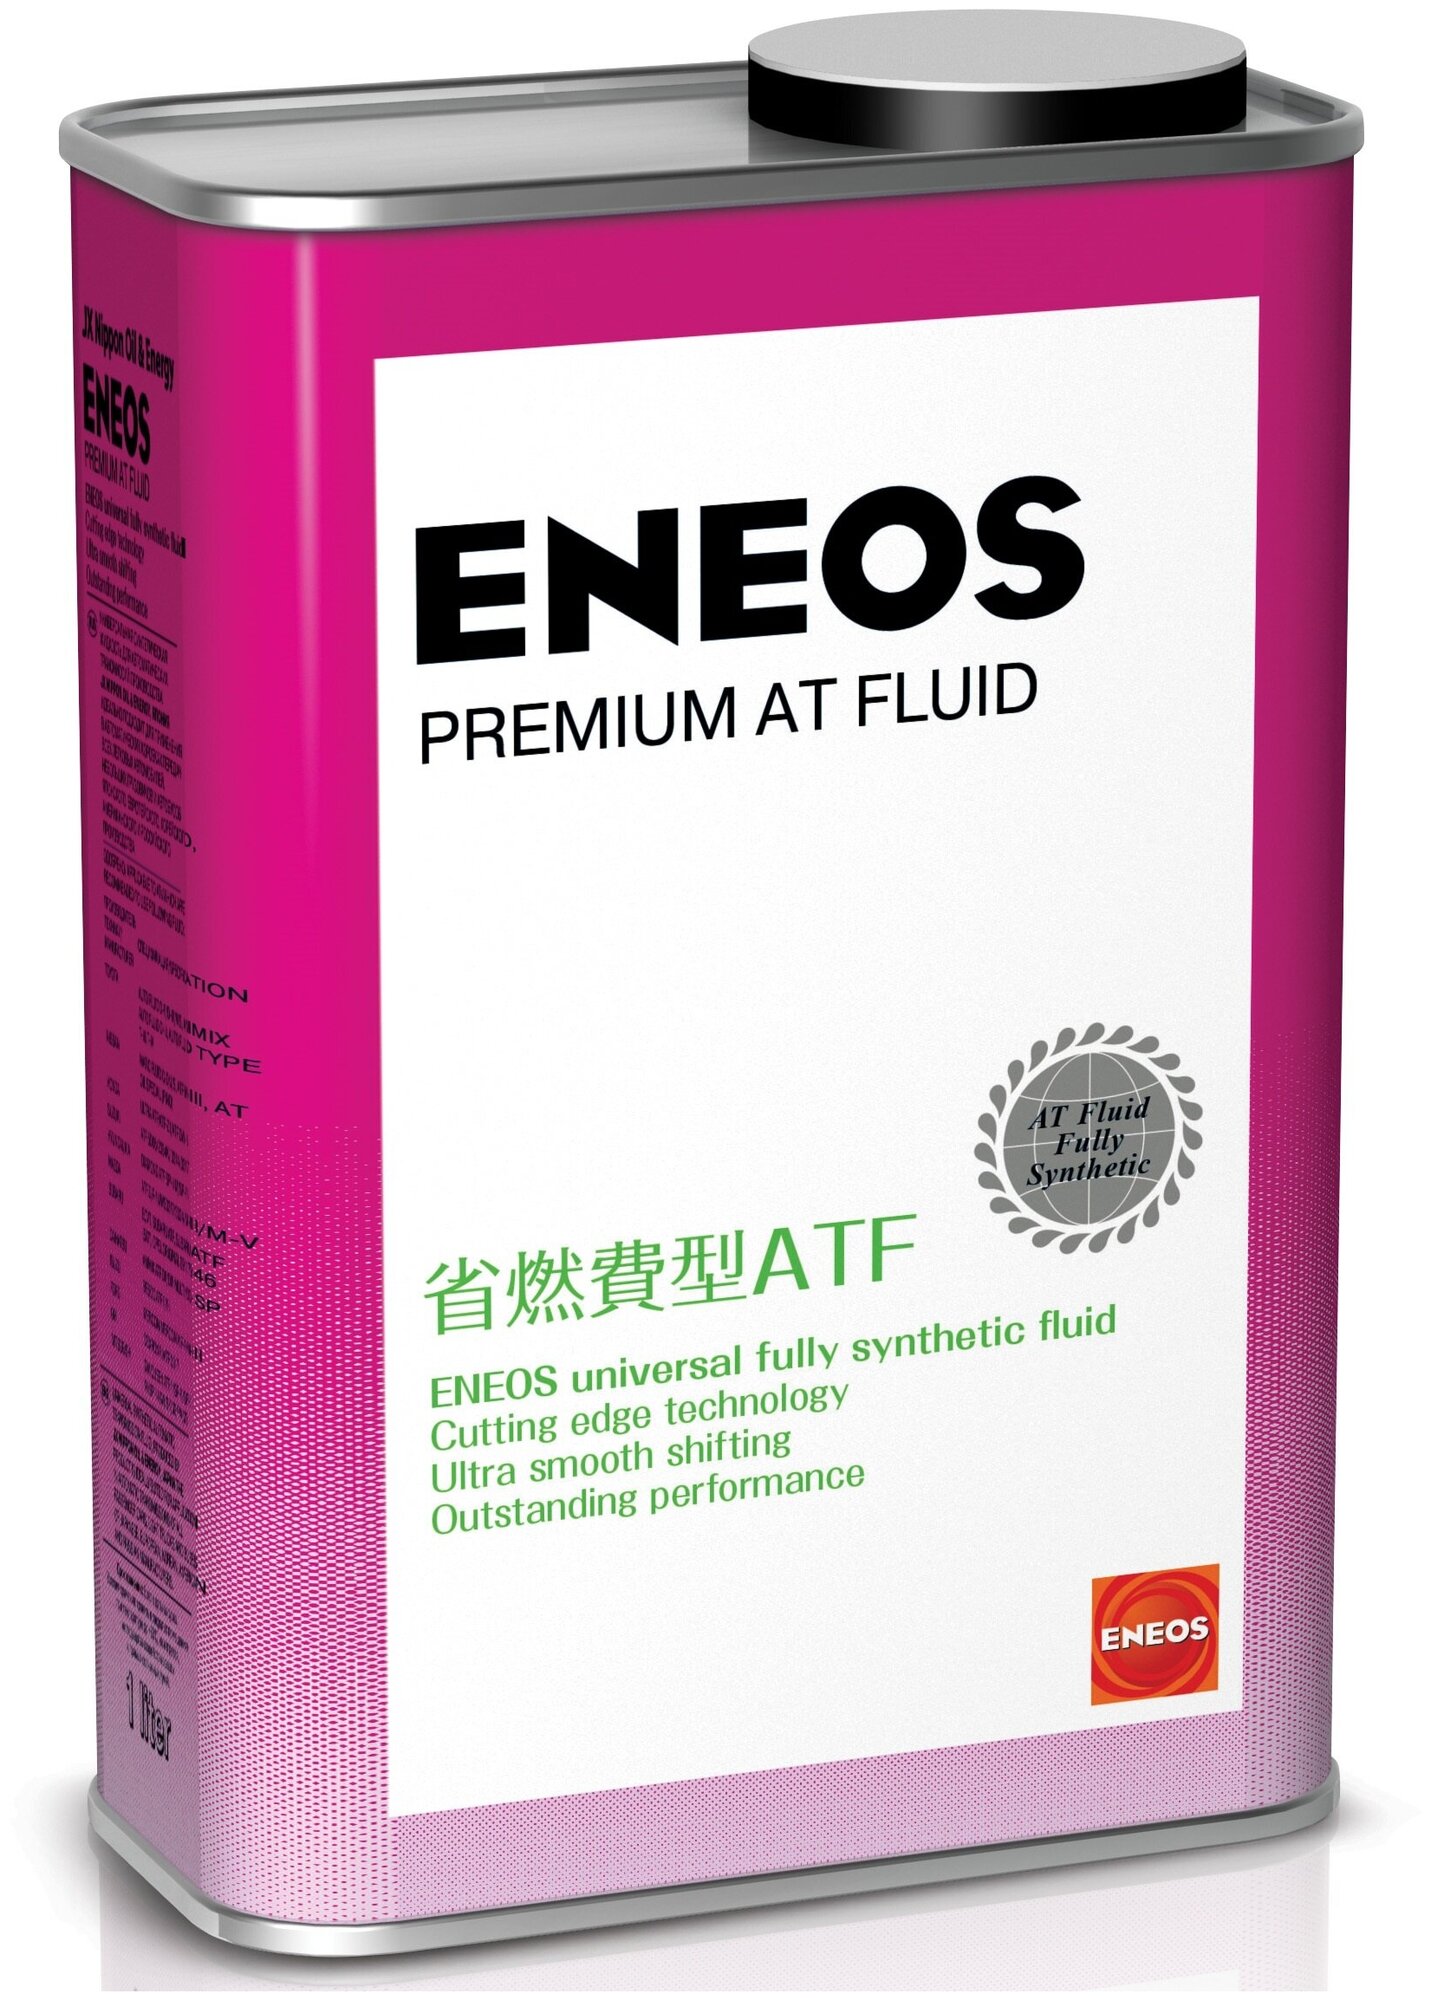   Eneos 1  atf premium at fluid Eneos 8809478942018